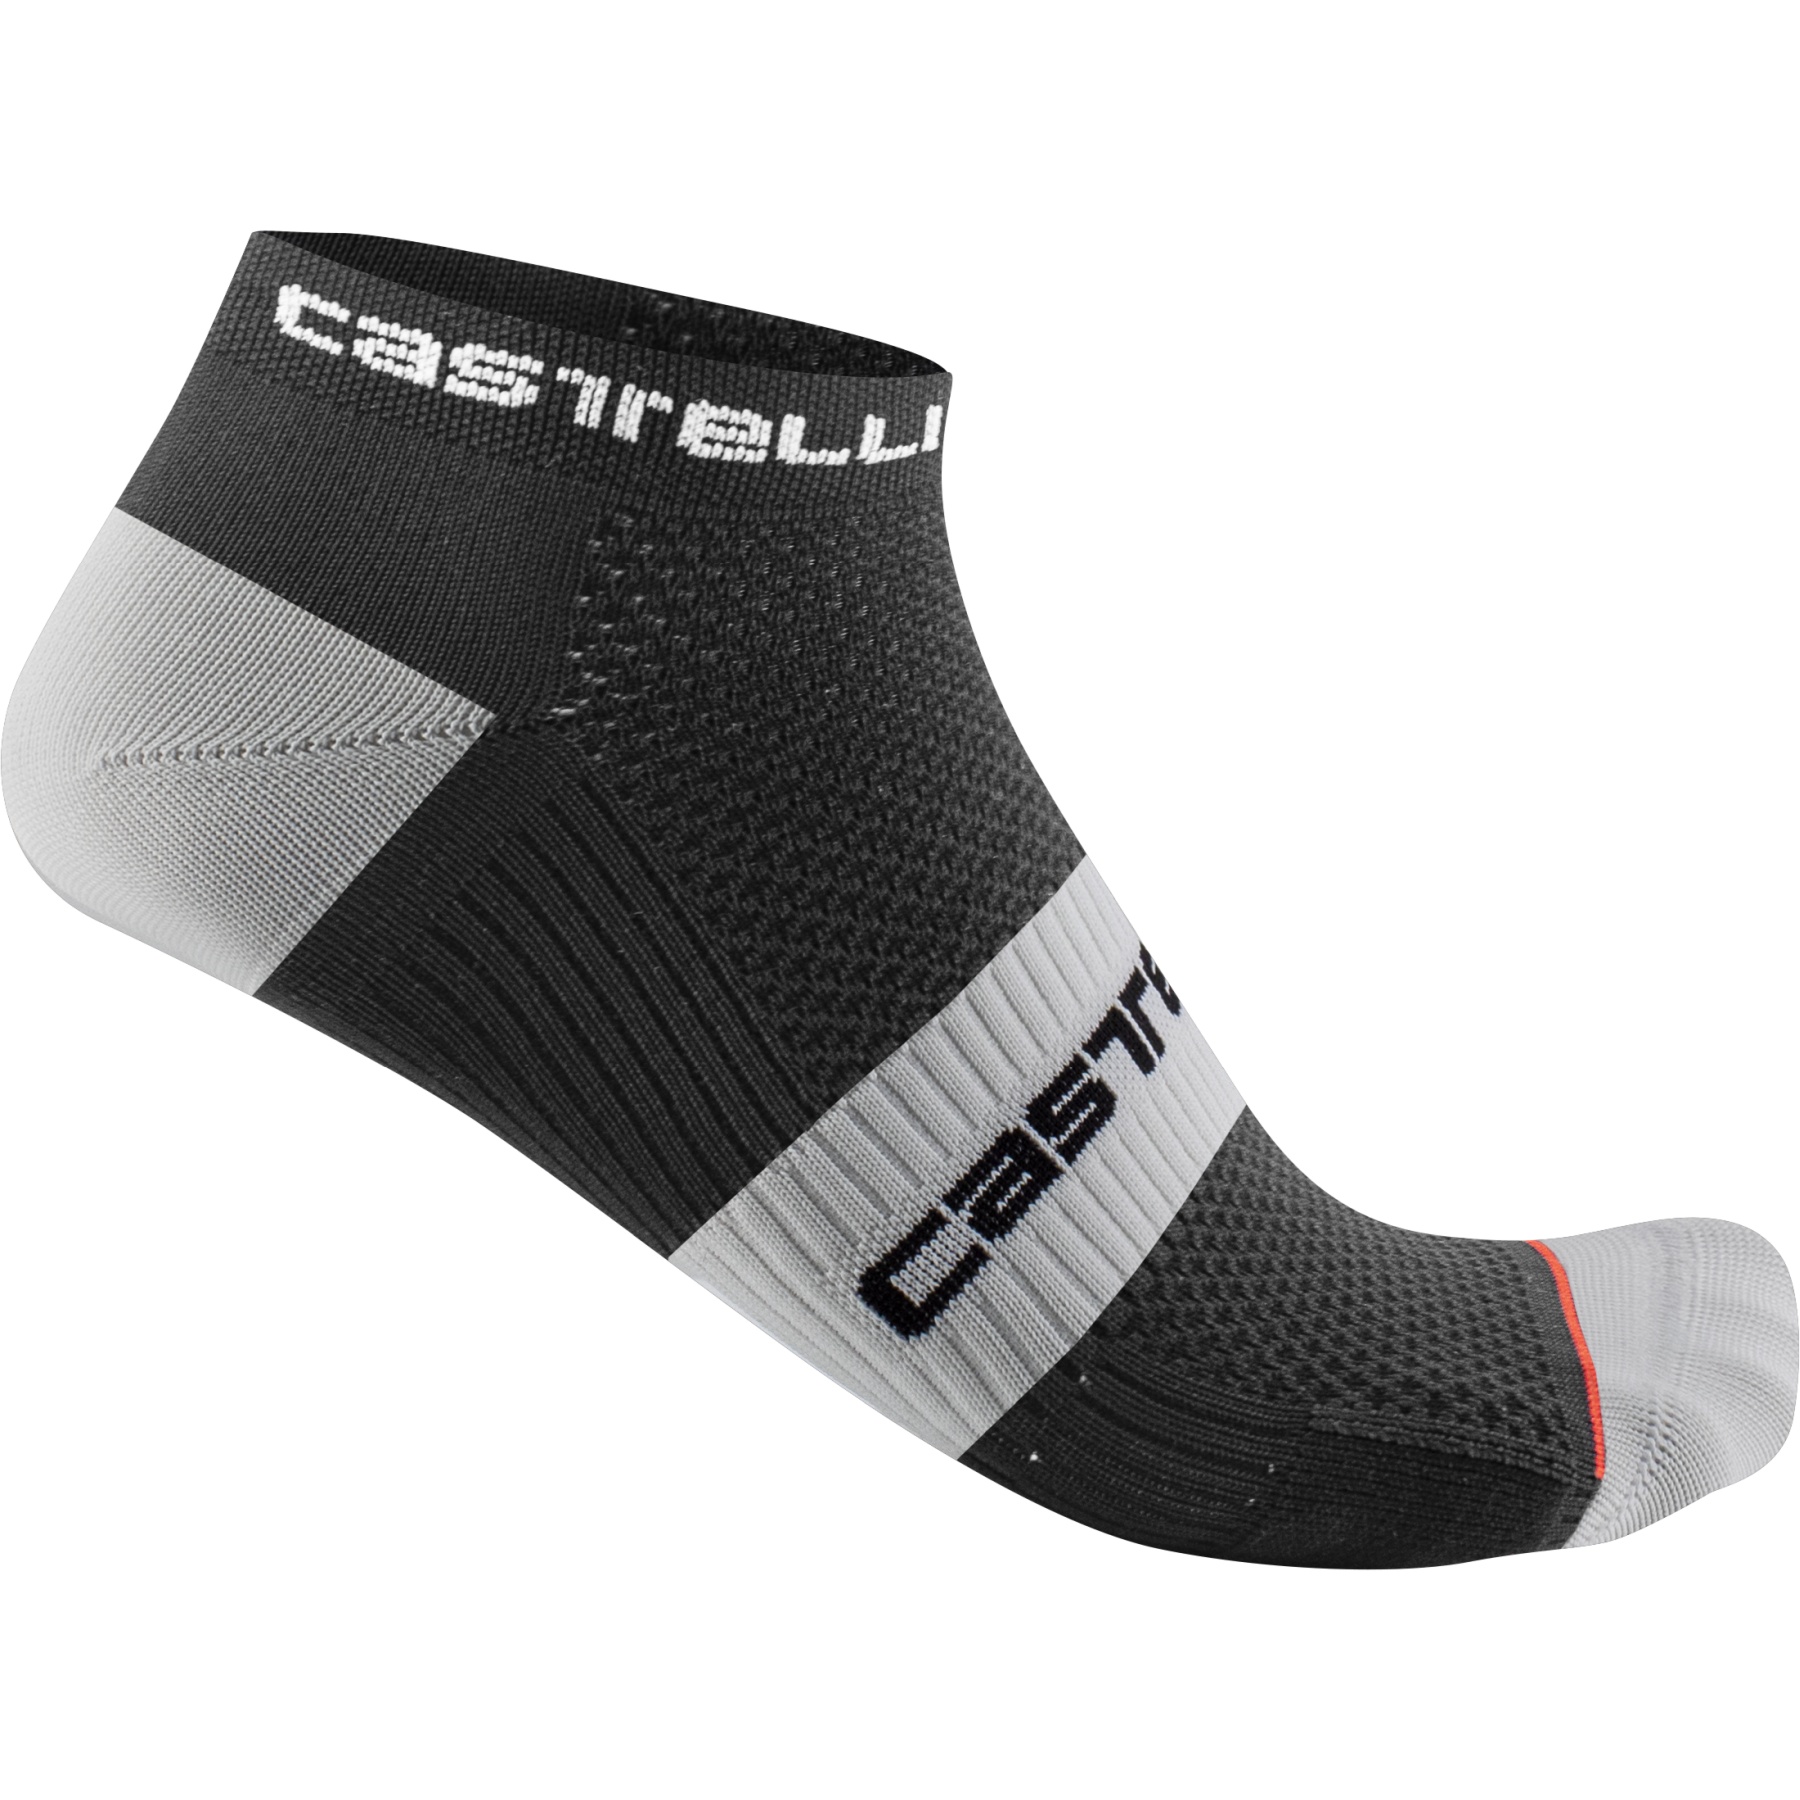 Produktbild von Castelli Lowboy 2 Socken - schwarz weiß 010